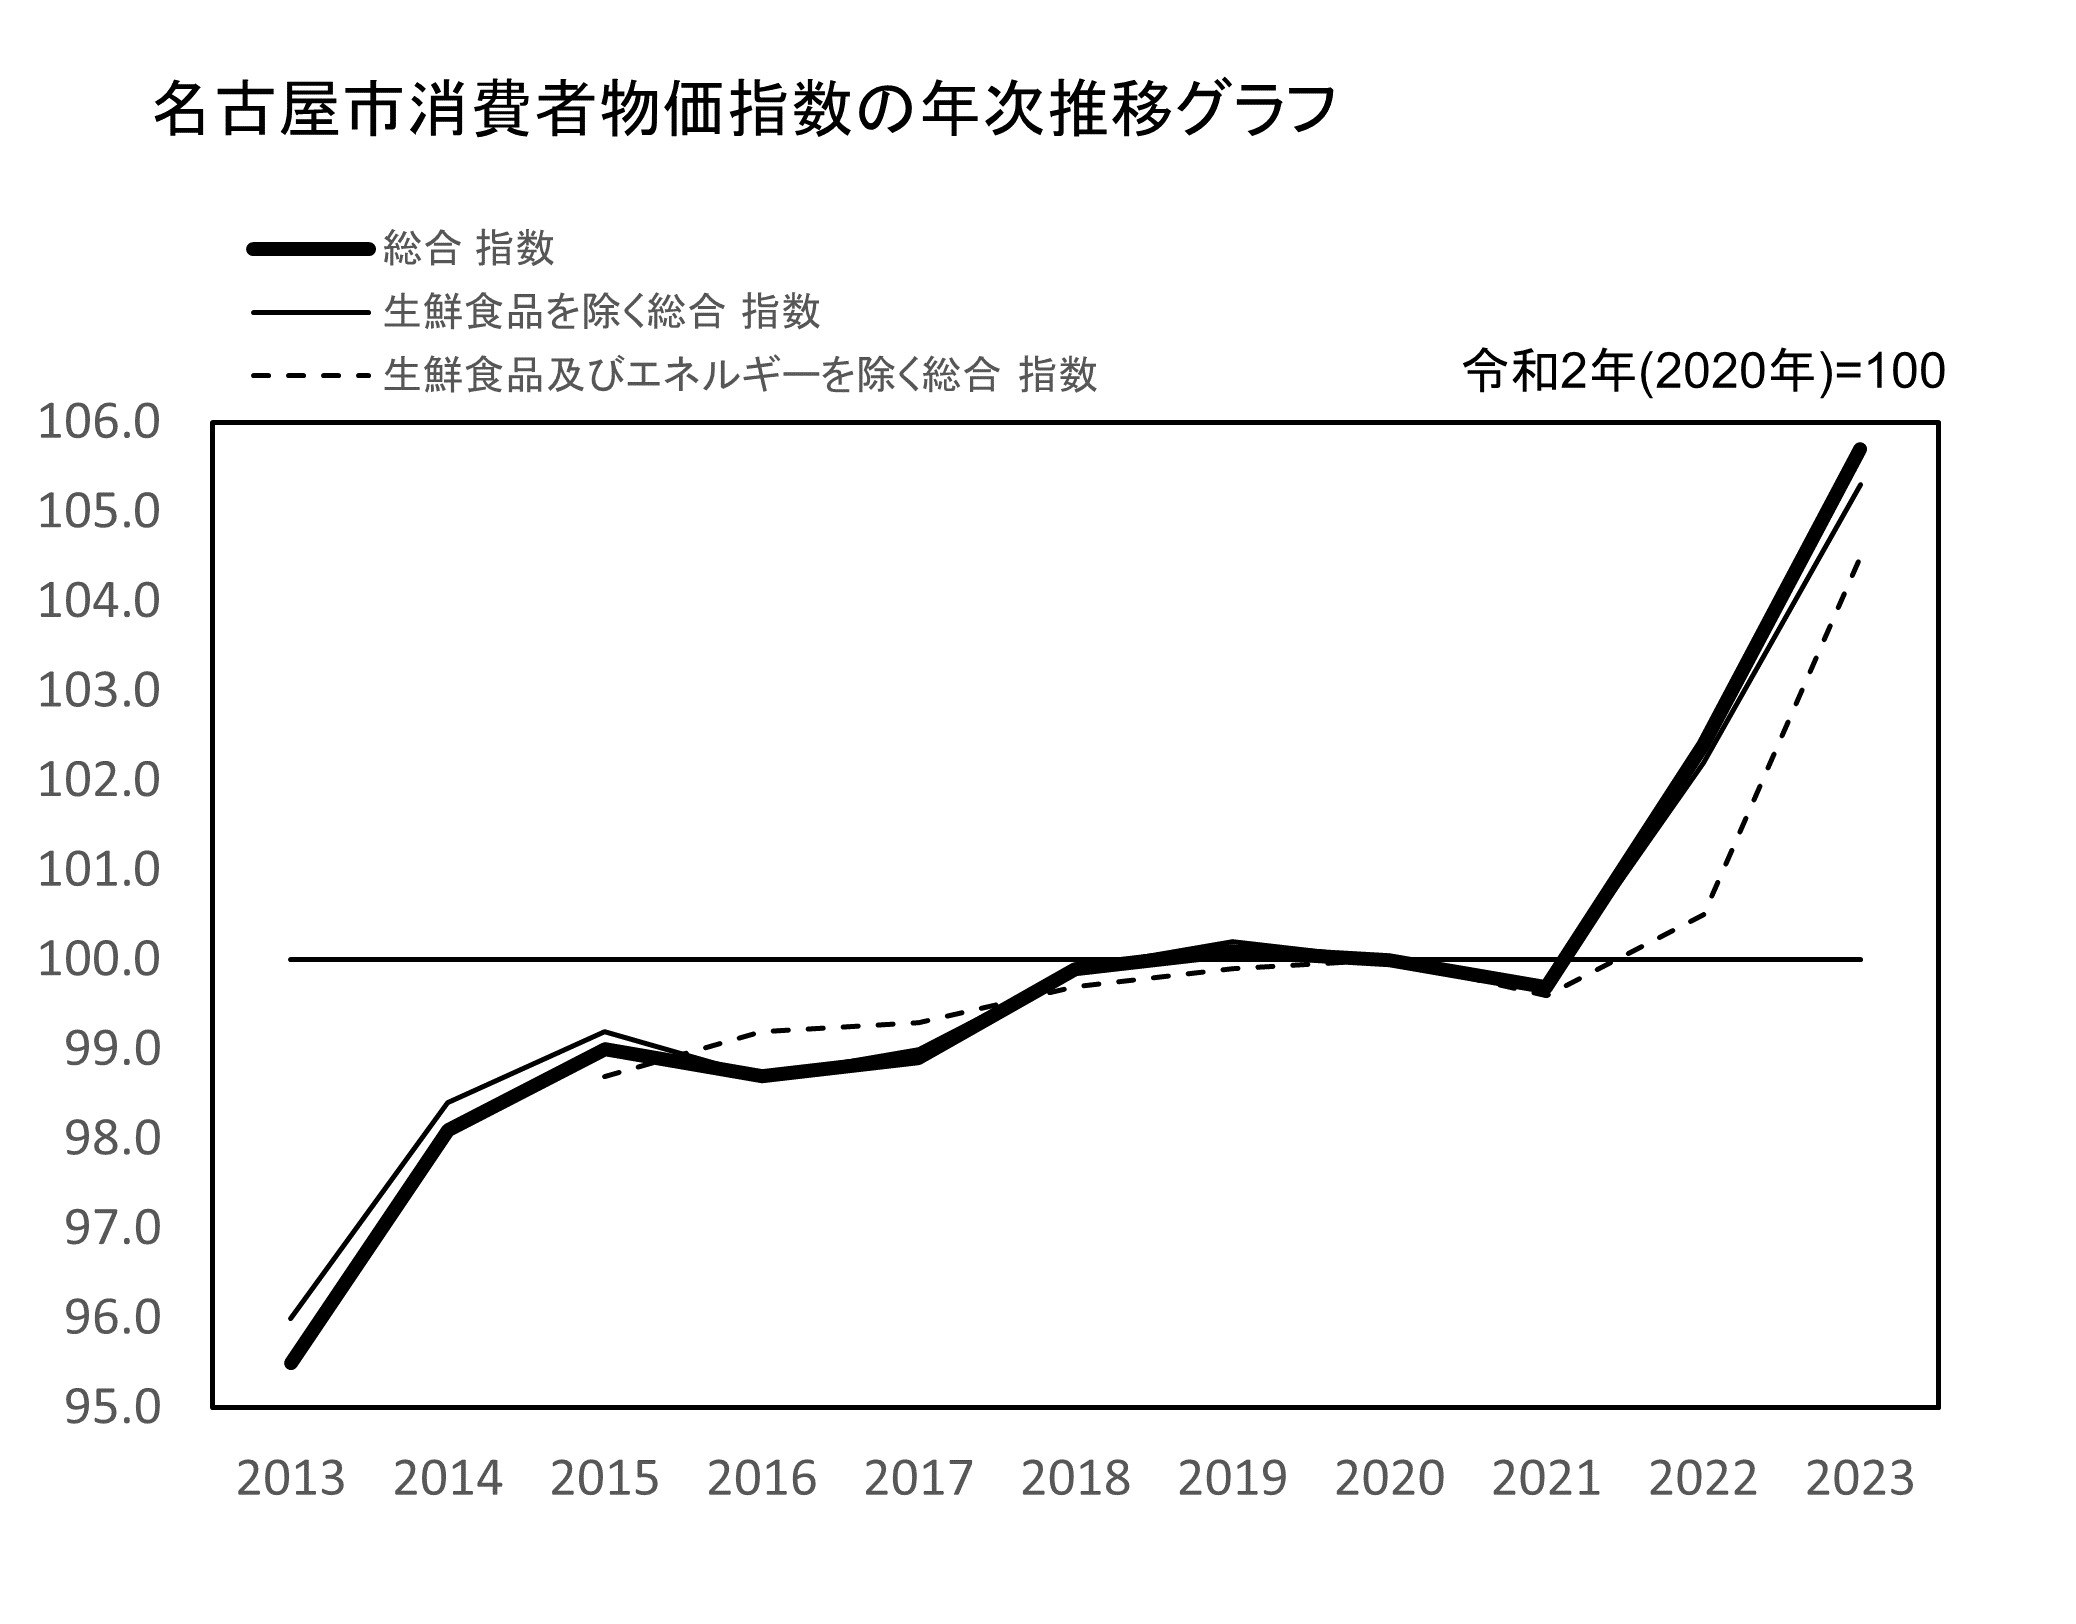 名古屋市消費者物価指数　年次推移グラフ